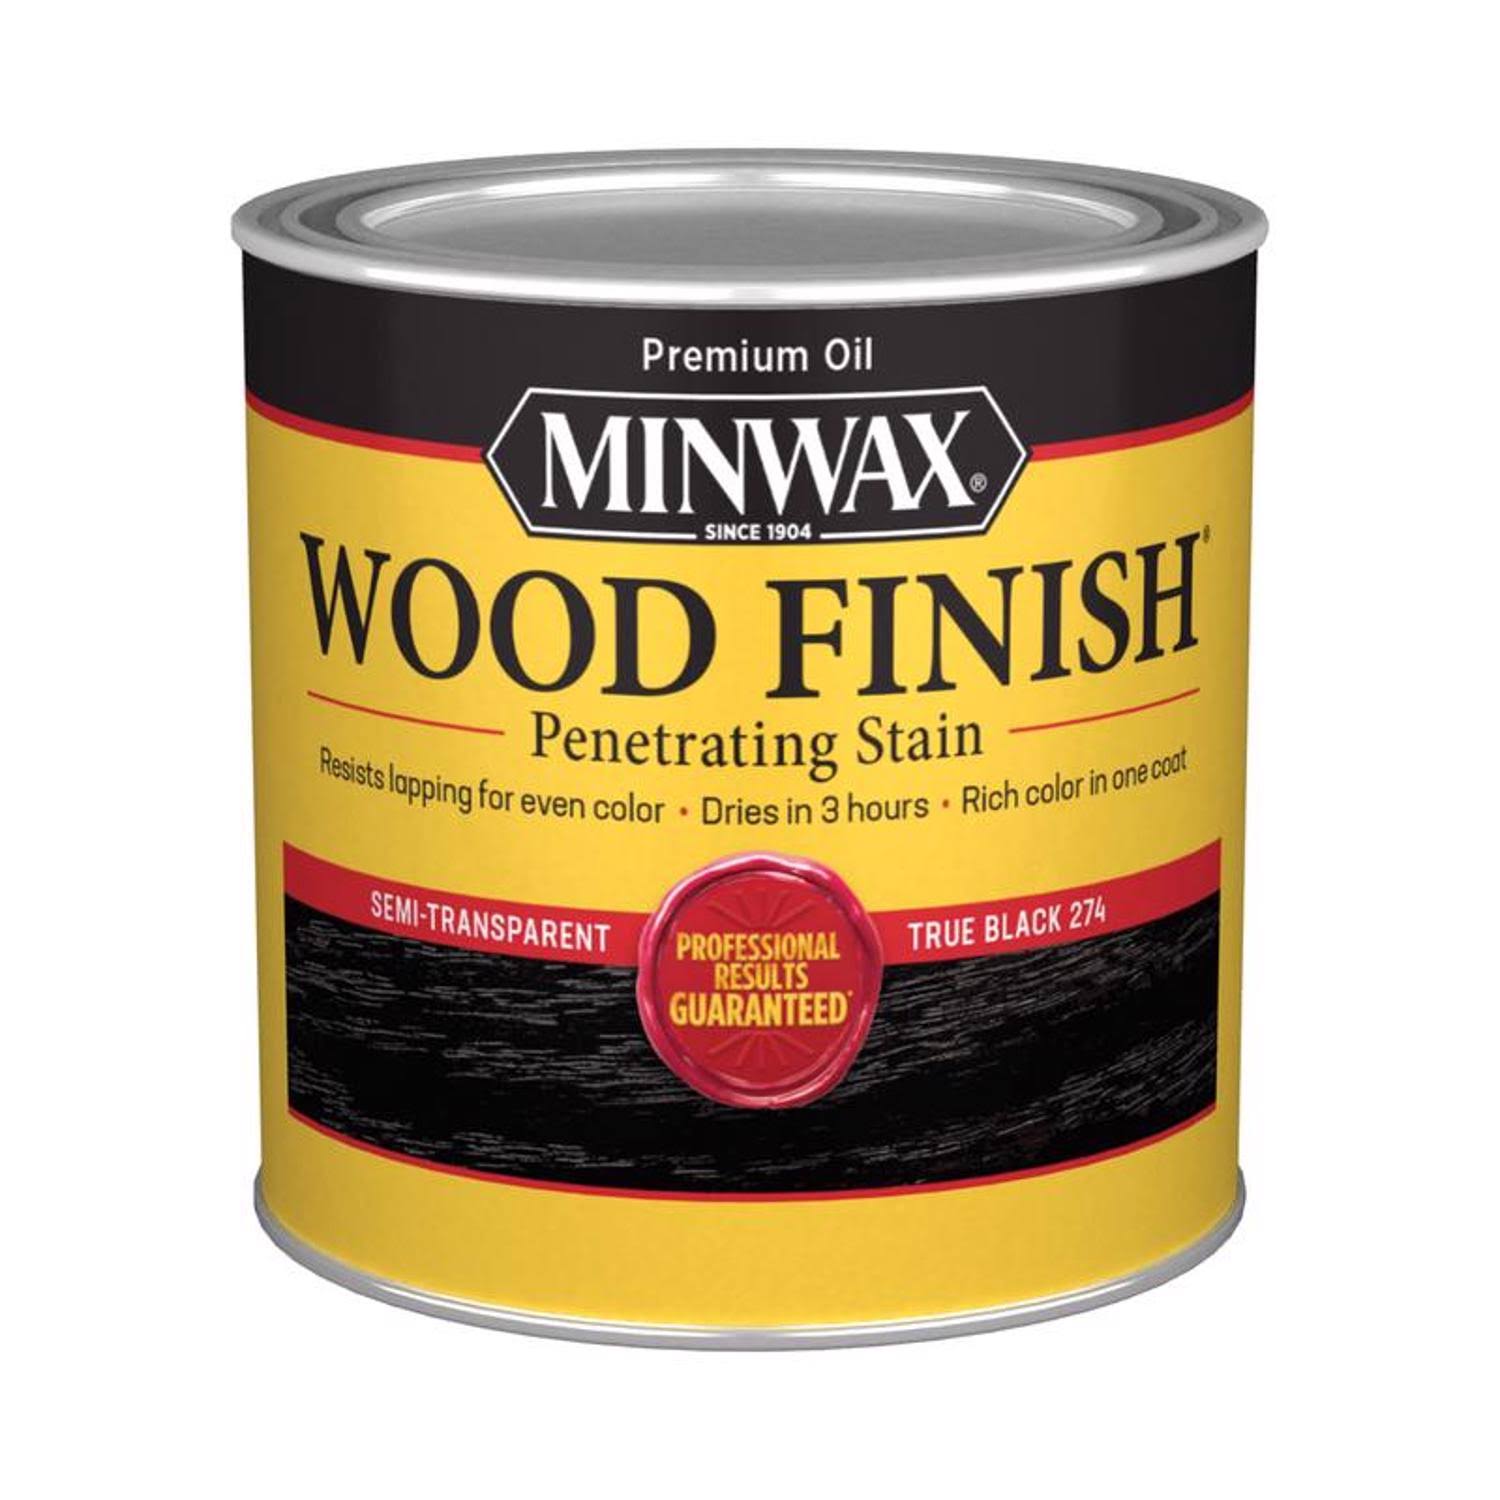 Minwax True Black Wood Finish